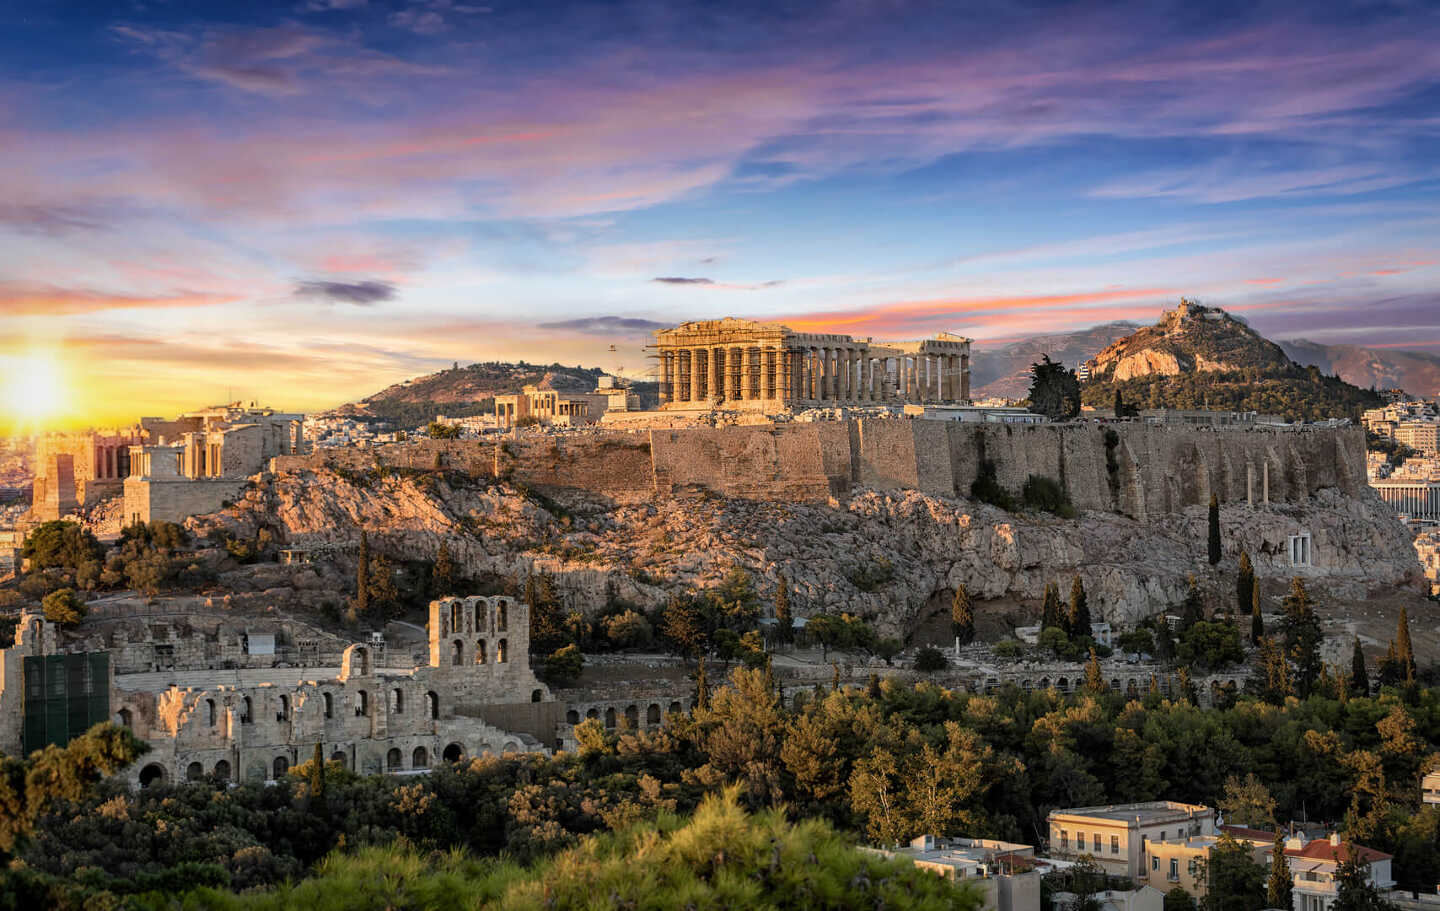 Le temple du Parthénon sur l'Acropole d'Athènes, en Grèce, lors d'un coucher de soleil coloré.